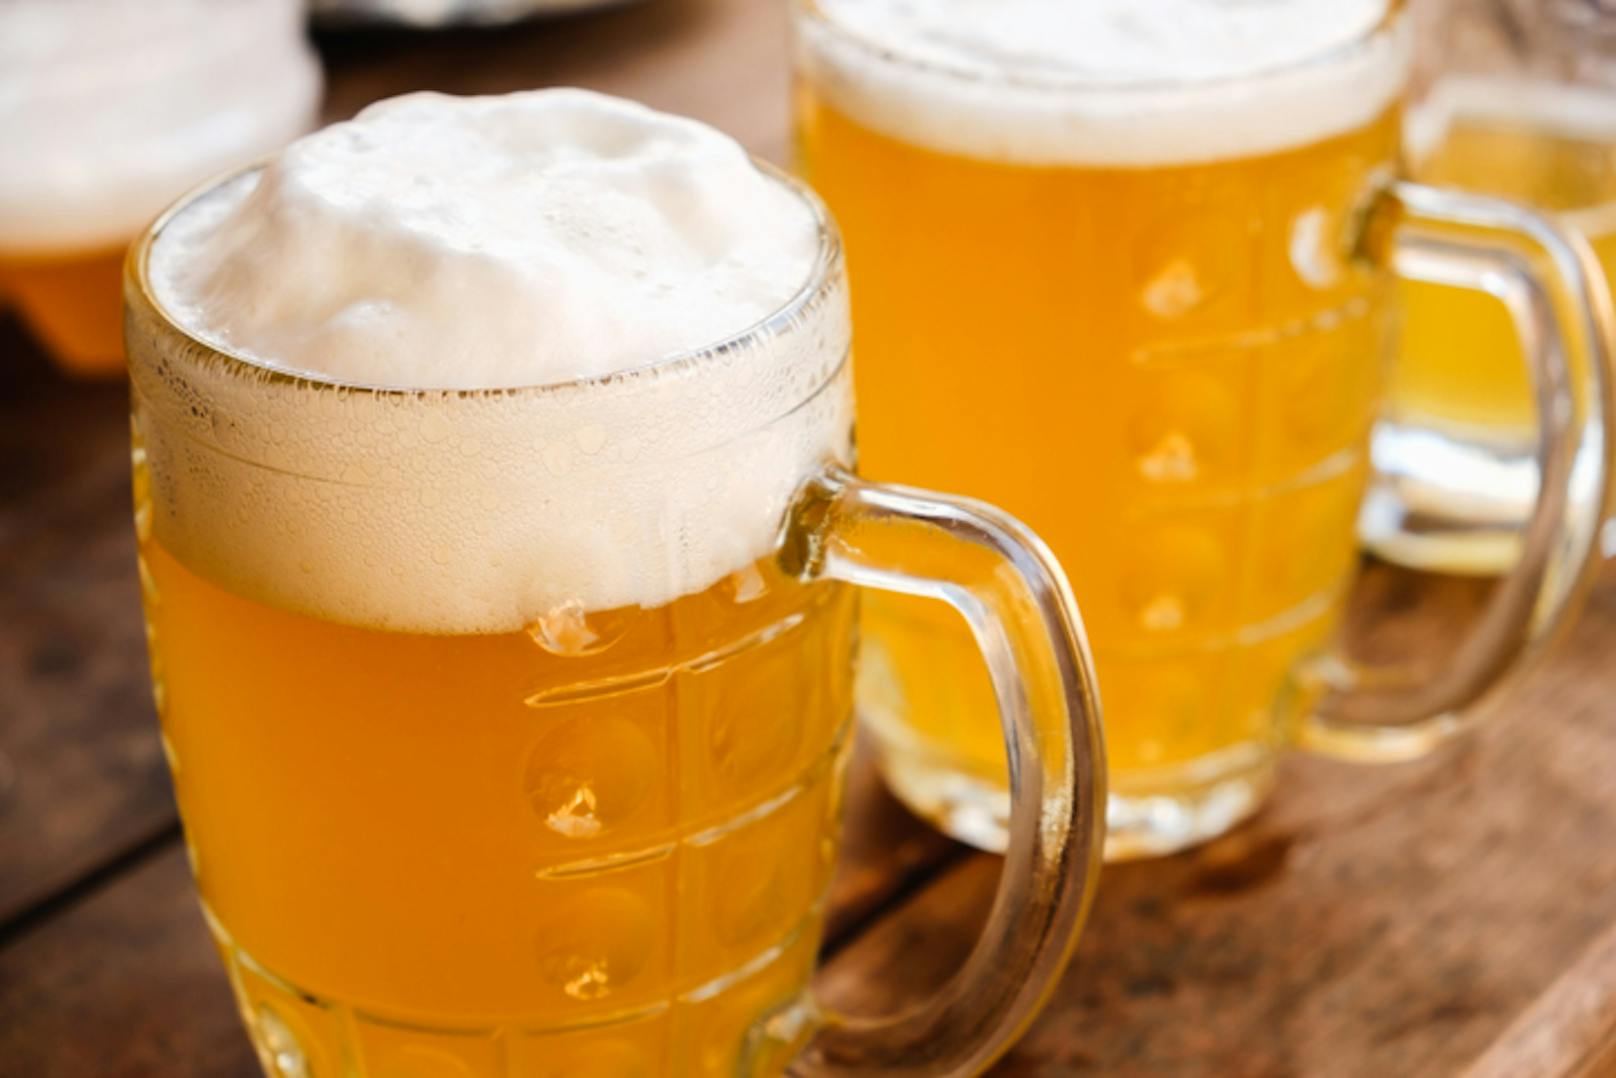 Viele sagen, dass sie seit dem Ausbruch der Corona-Pandemie mehr Bier konsumieren. Die Brauereien spüren davon aber wenig.